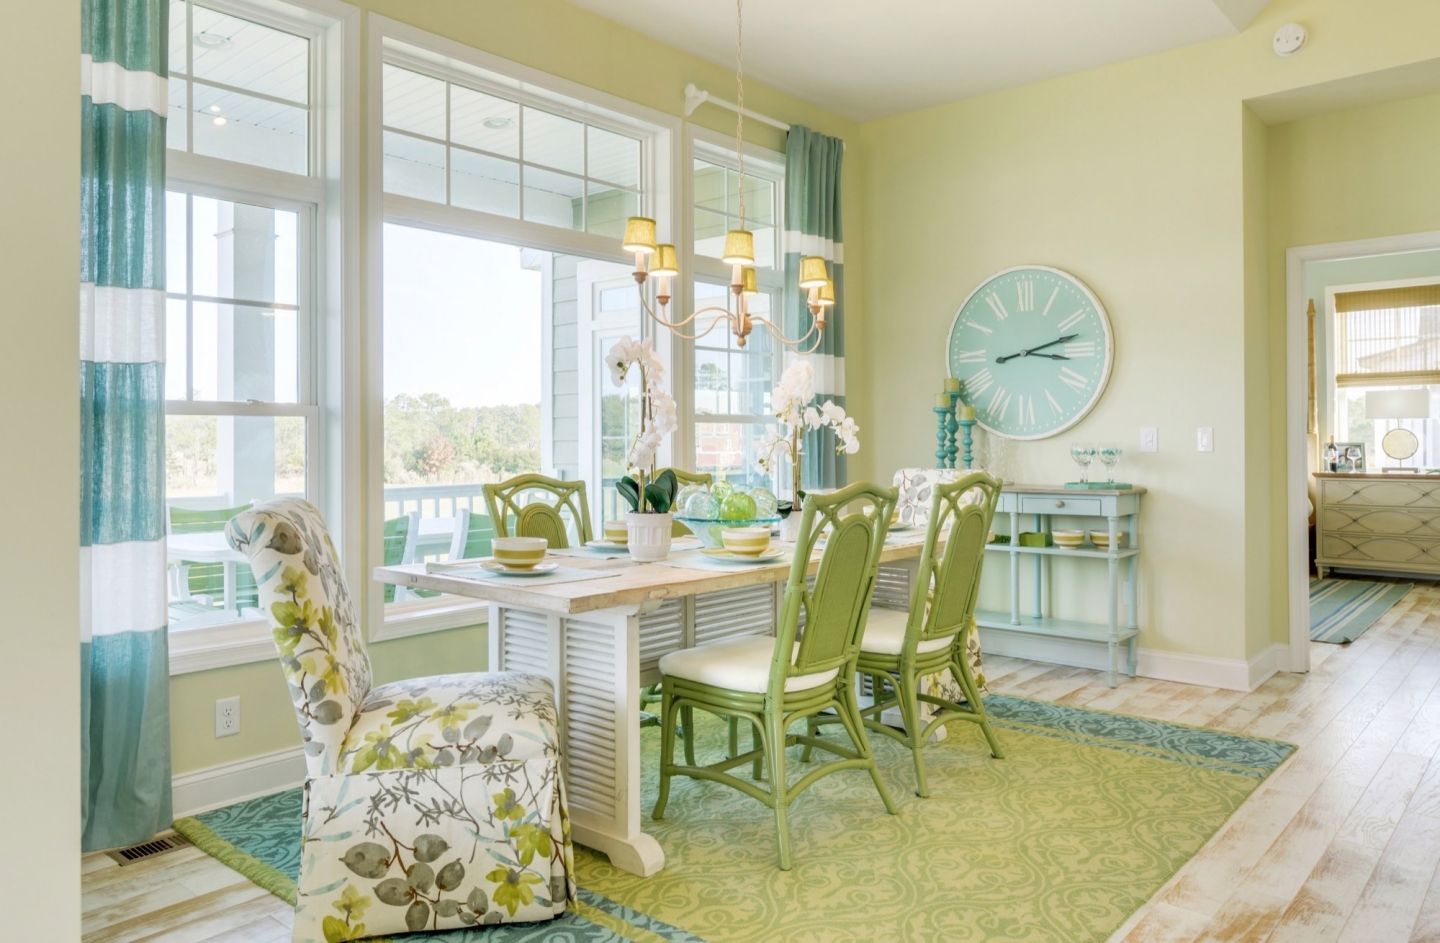 Phòng ăn thư giãn với phong cách bãi biển, kết hợp màu xanh lục nhạt và màu xanh lam êm ái.